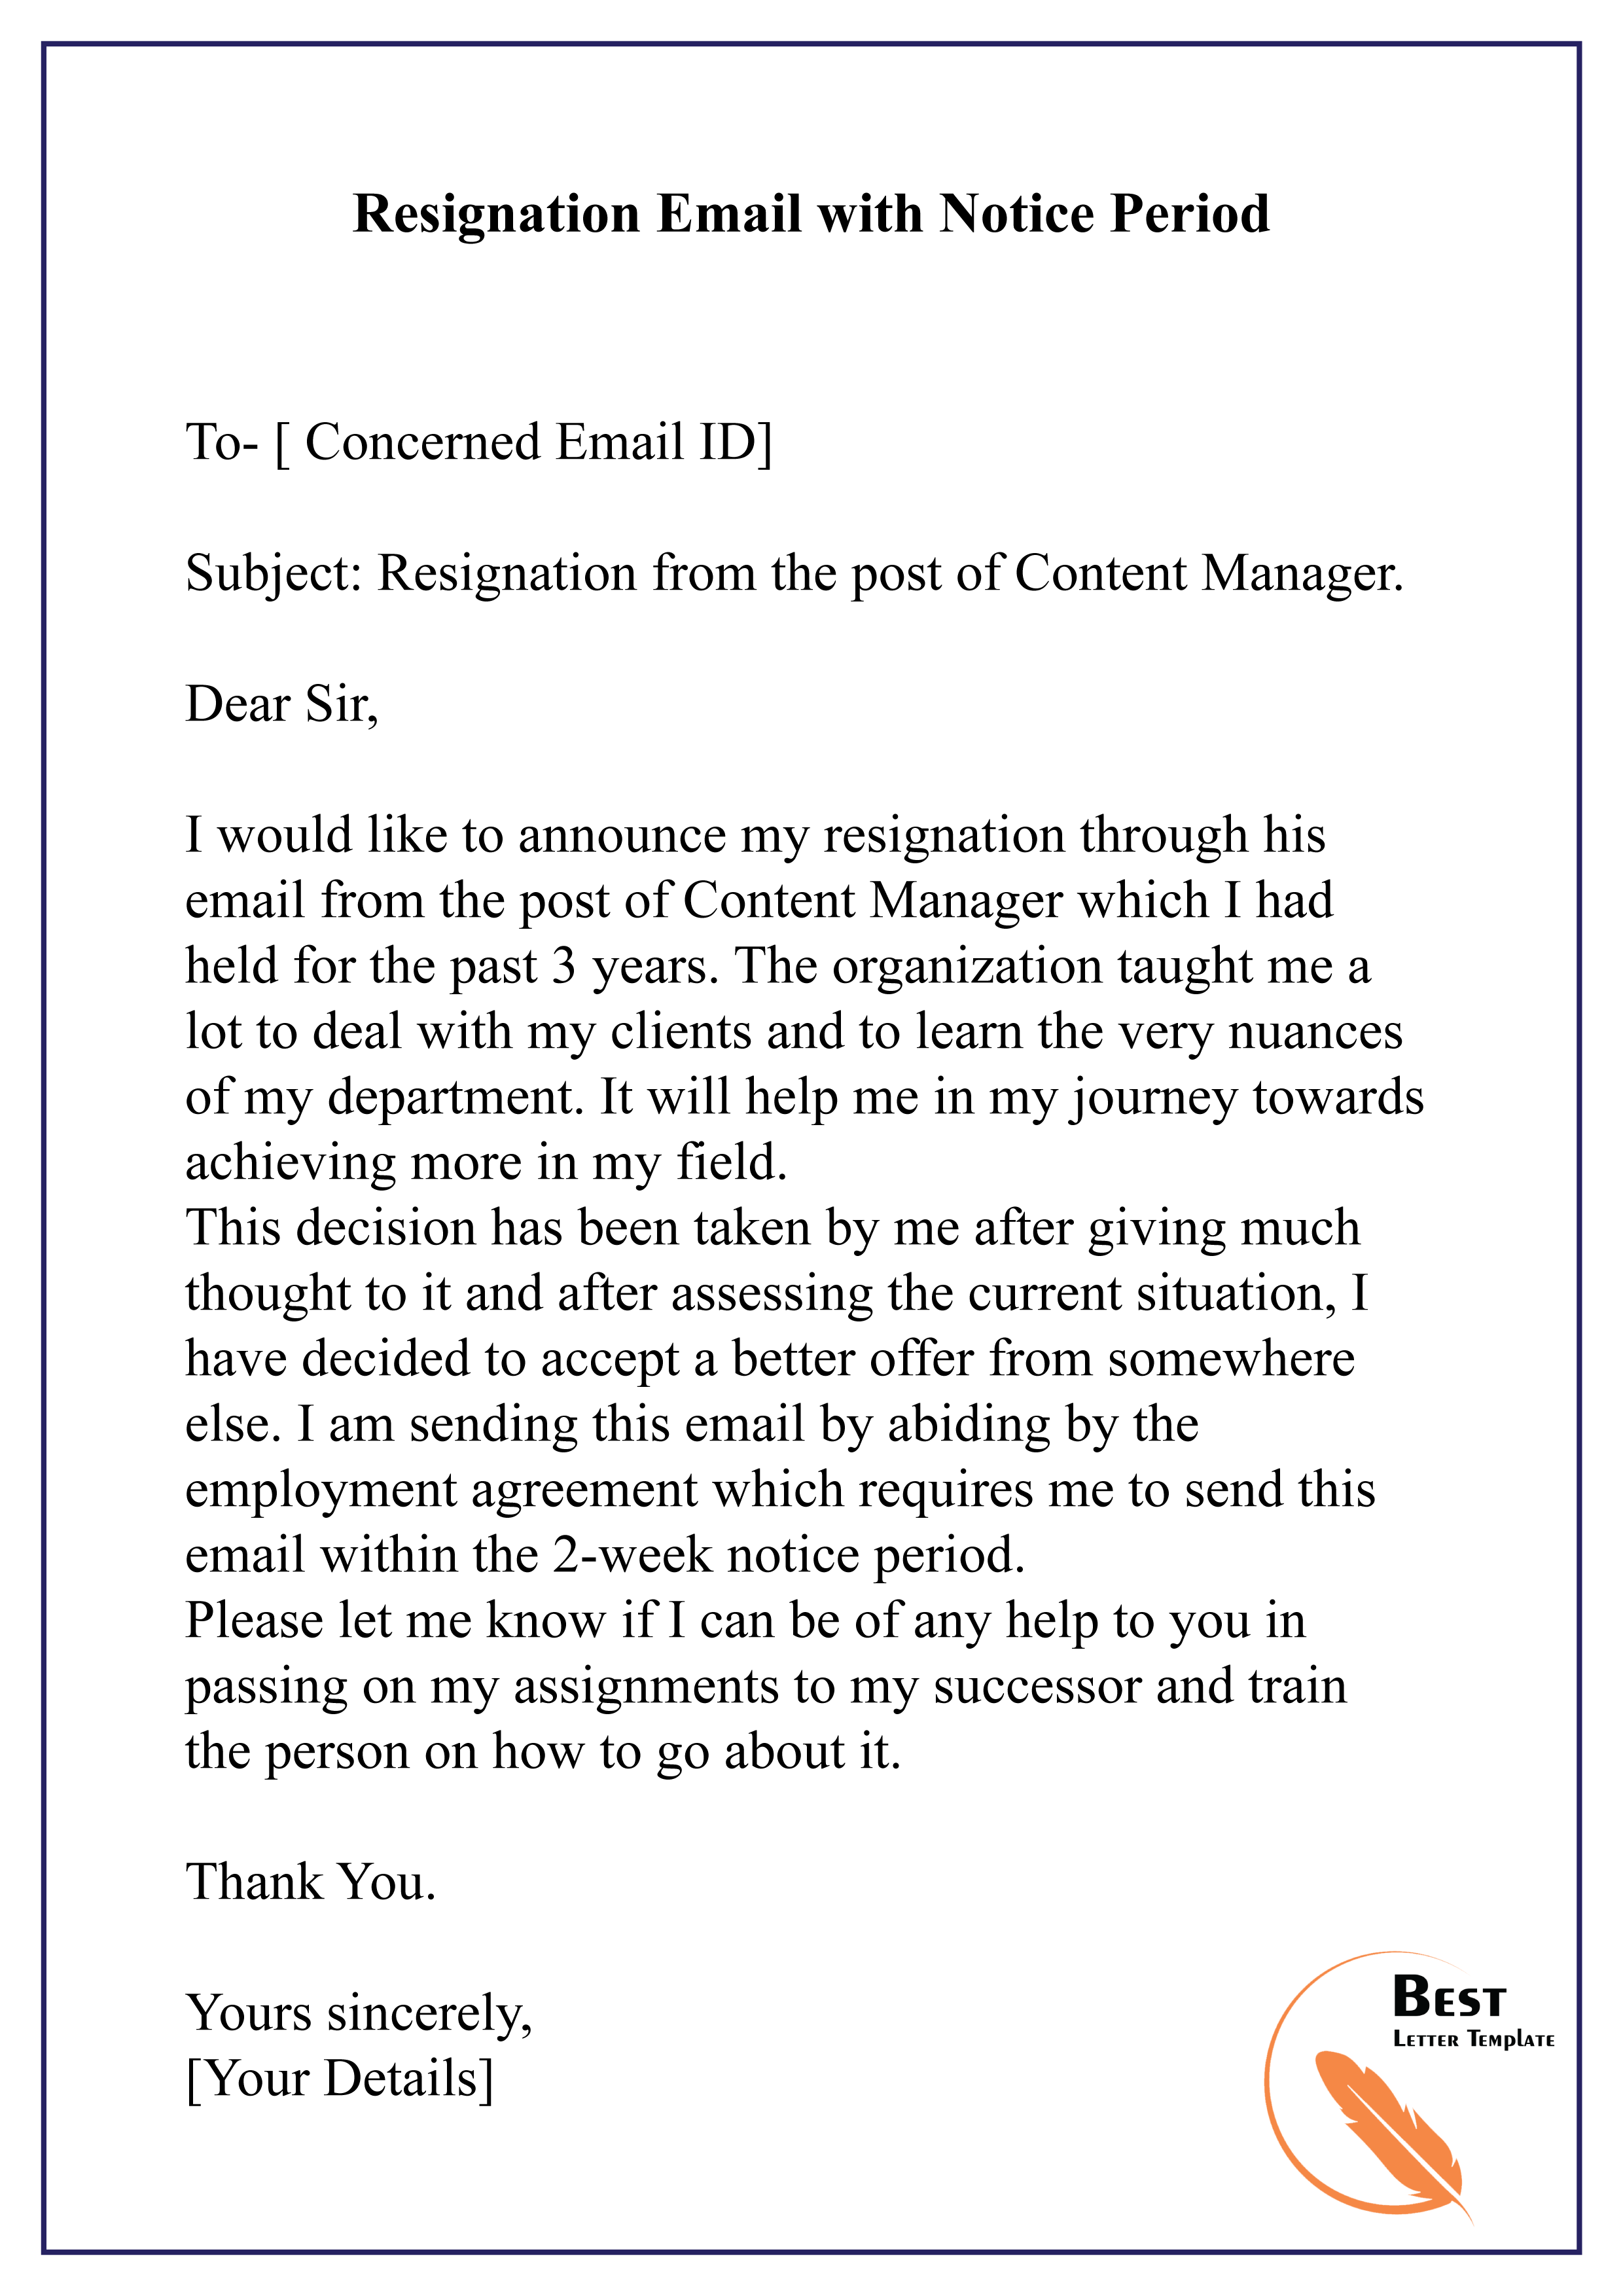 Subject Line For Letter Of Resignation from bestlettertemplate.com